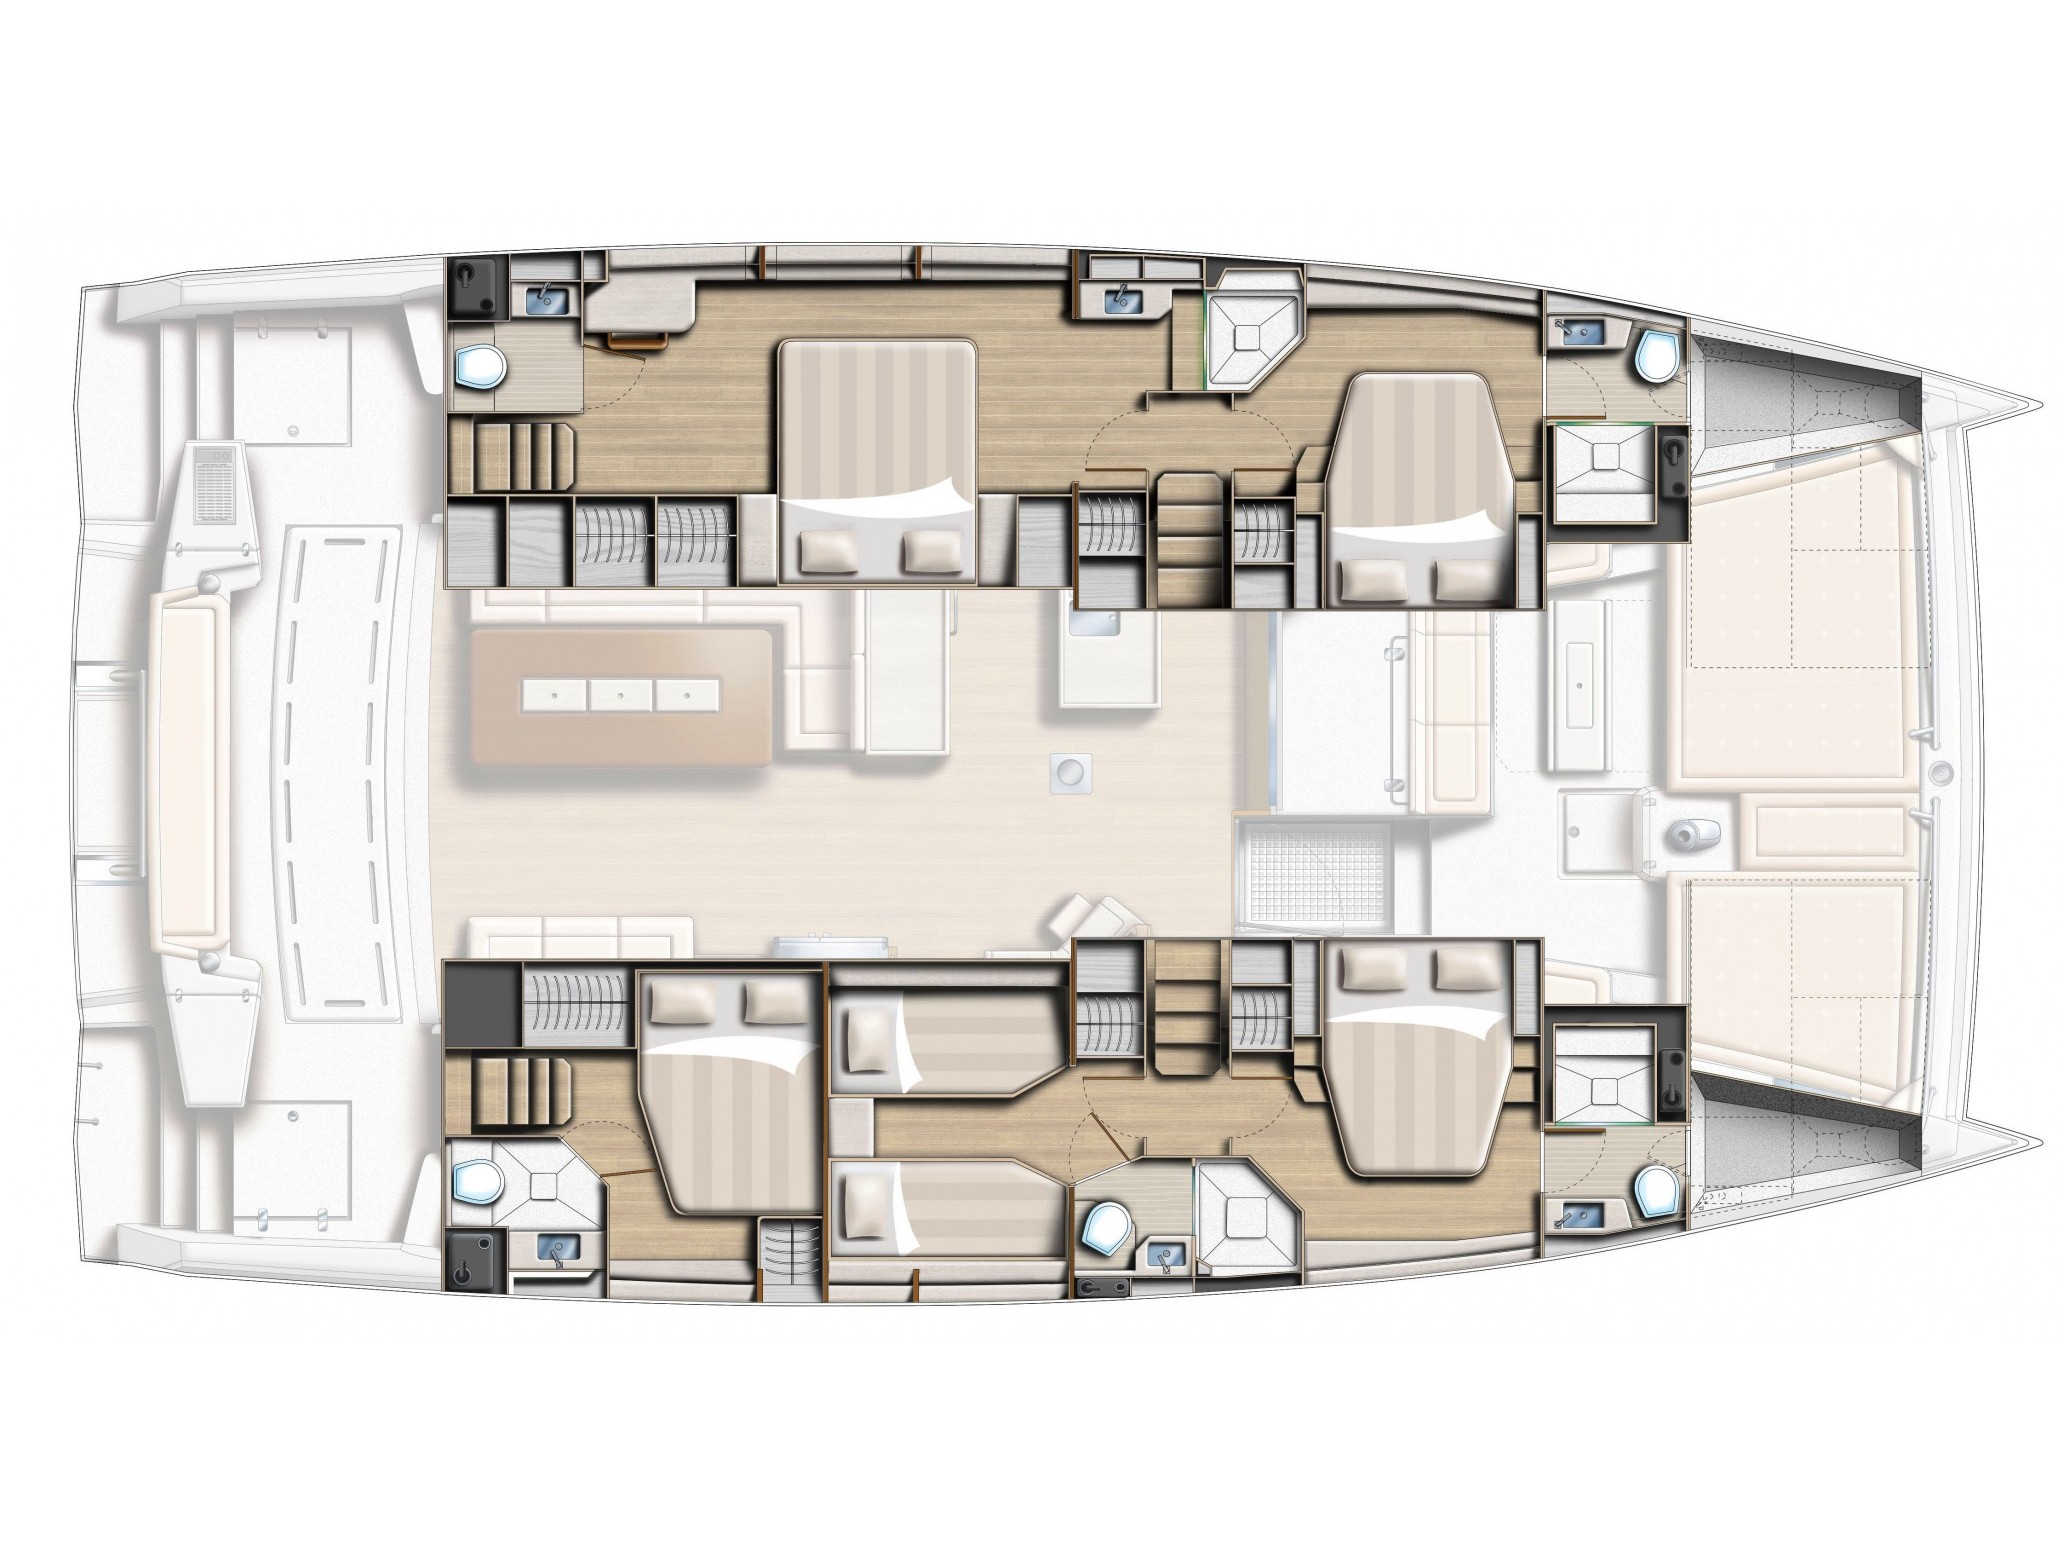 Bali 5.4 - Luxury yacht charter Sicily & Boat hire in Italy Sicily Aeolian Islands Capo d'Orlando Capo d'Orlando Marina 5